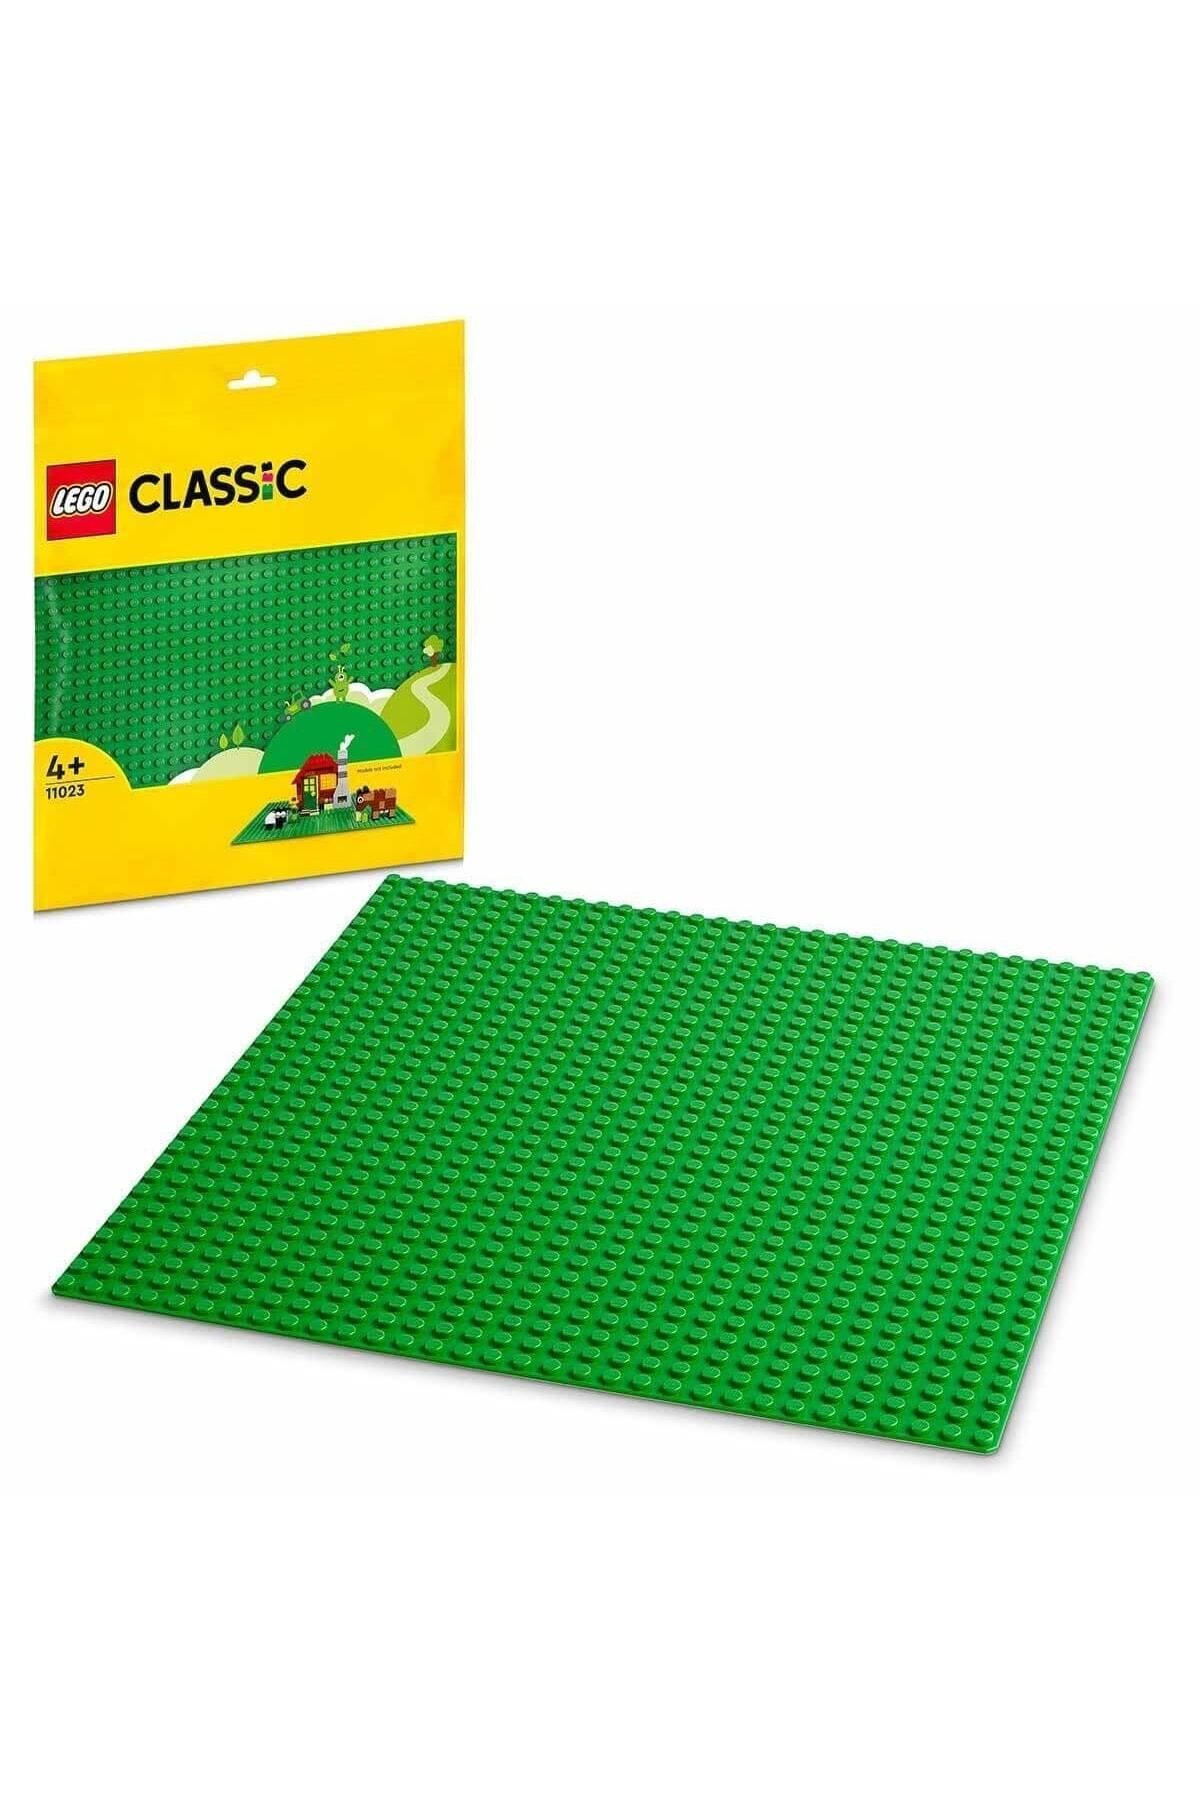 LEGO ® Classic Yeşil Plaka 11023 - 4 Yaş ve ÜzeriÇocuklar İçin Yaratıcı Yapım Seti (1 Parça)